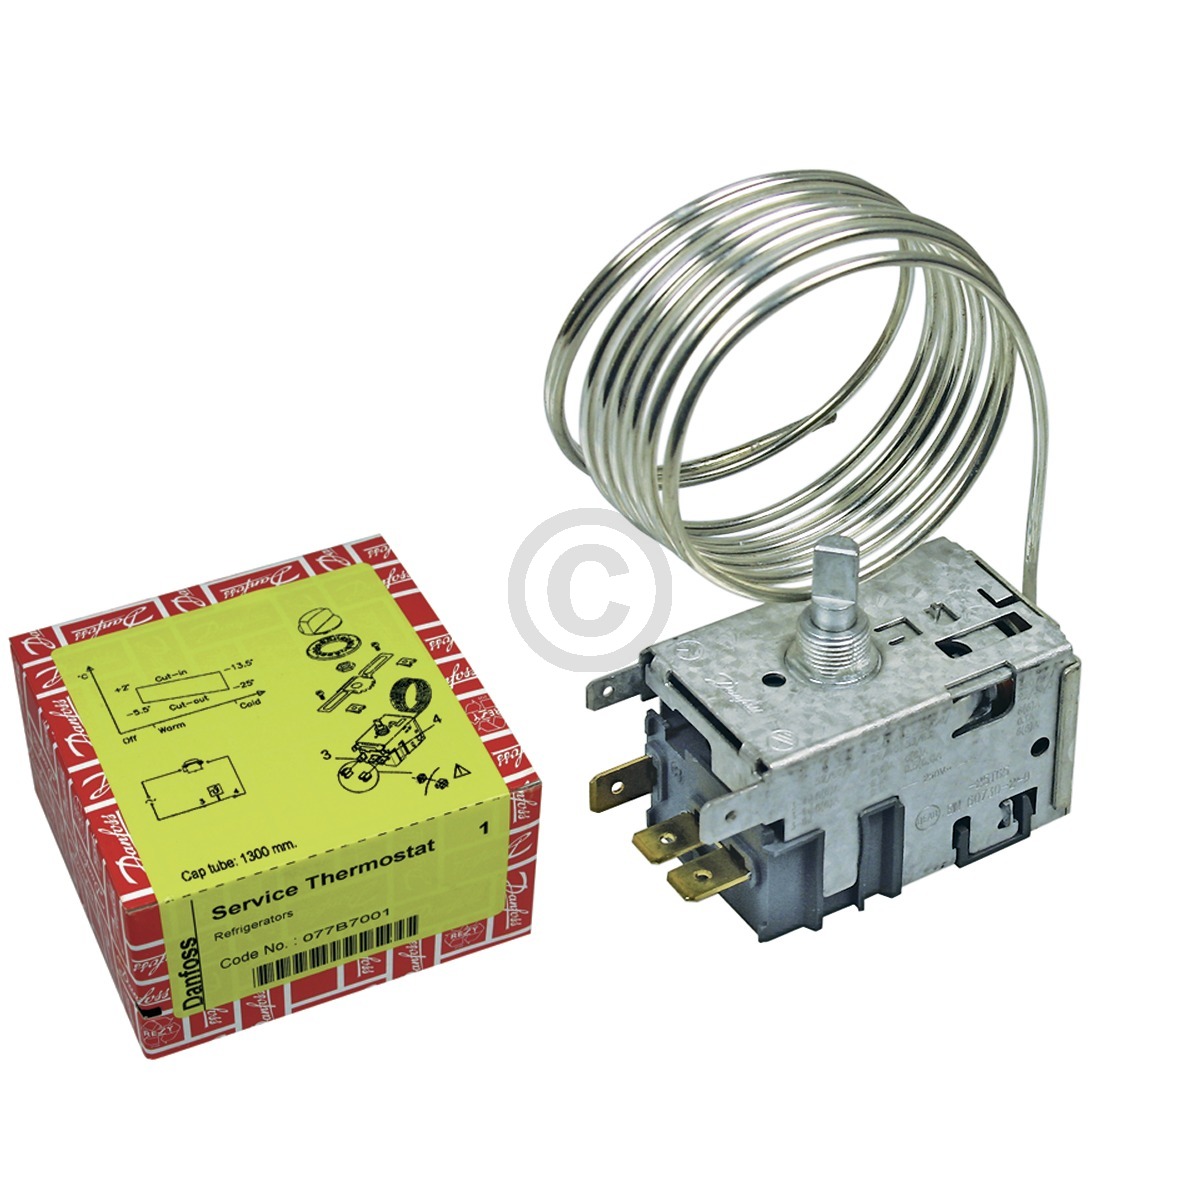 Thermostat Danfoss Nr.1 077B7001 Universal für Kühlschrank mit normaler Funktion